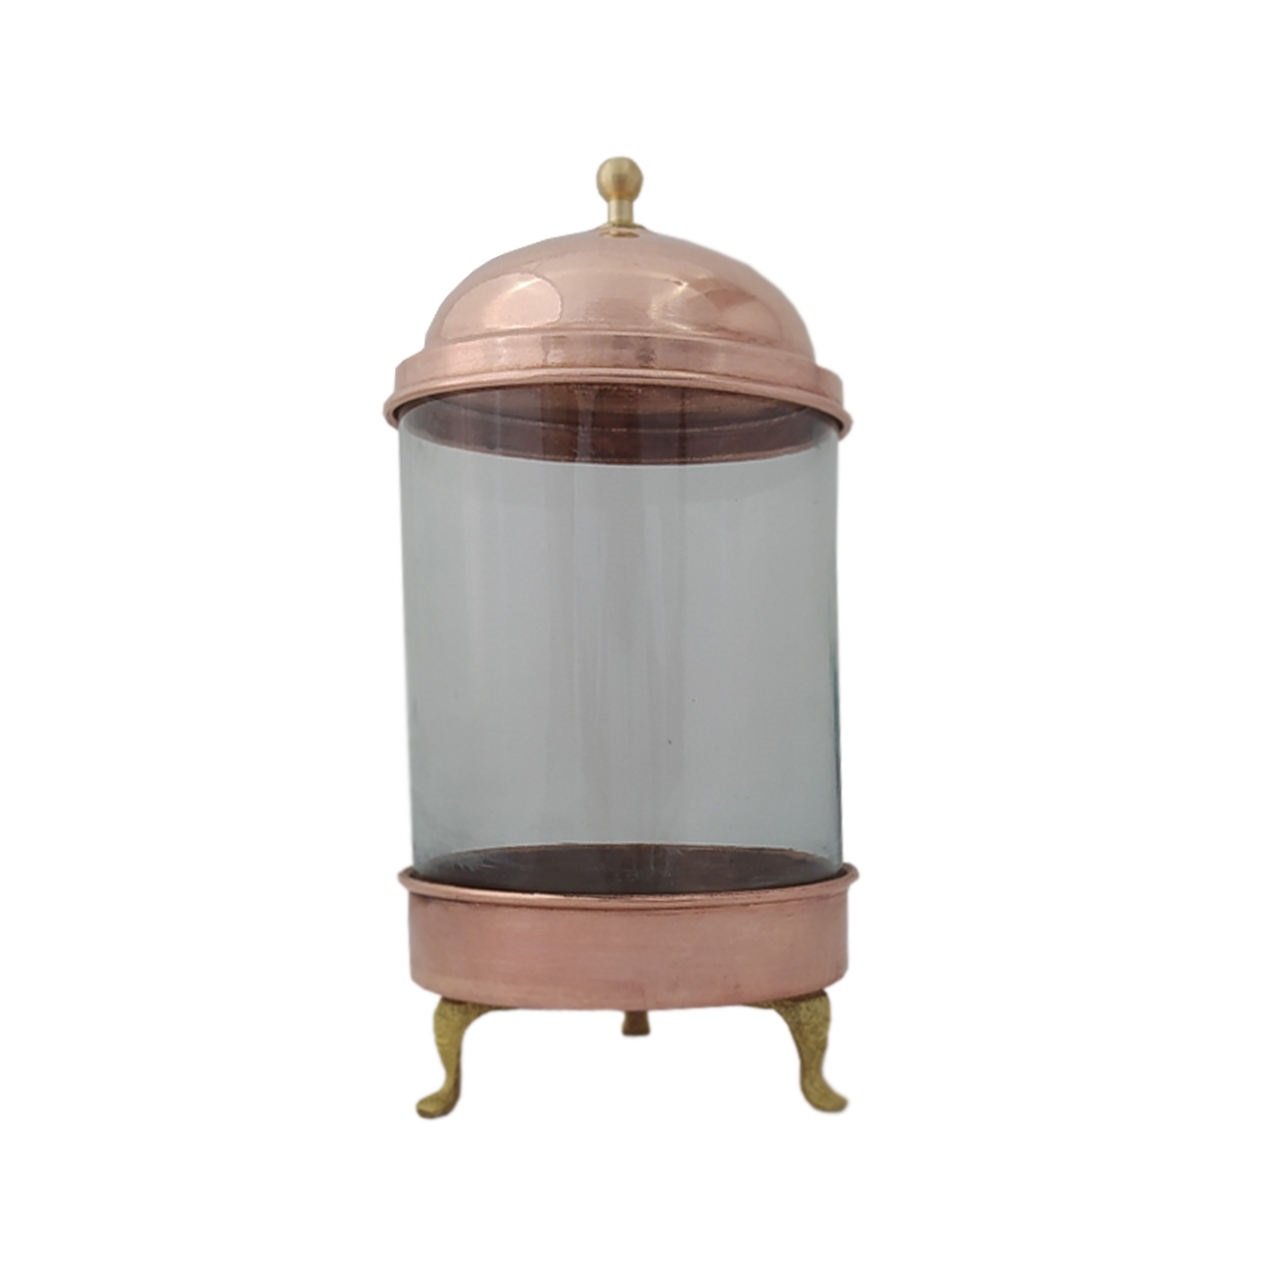 Handicraft Copper container Code ZH148.1, precio de platos de cobre, precio de artesanías de cobre